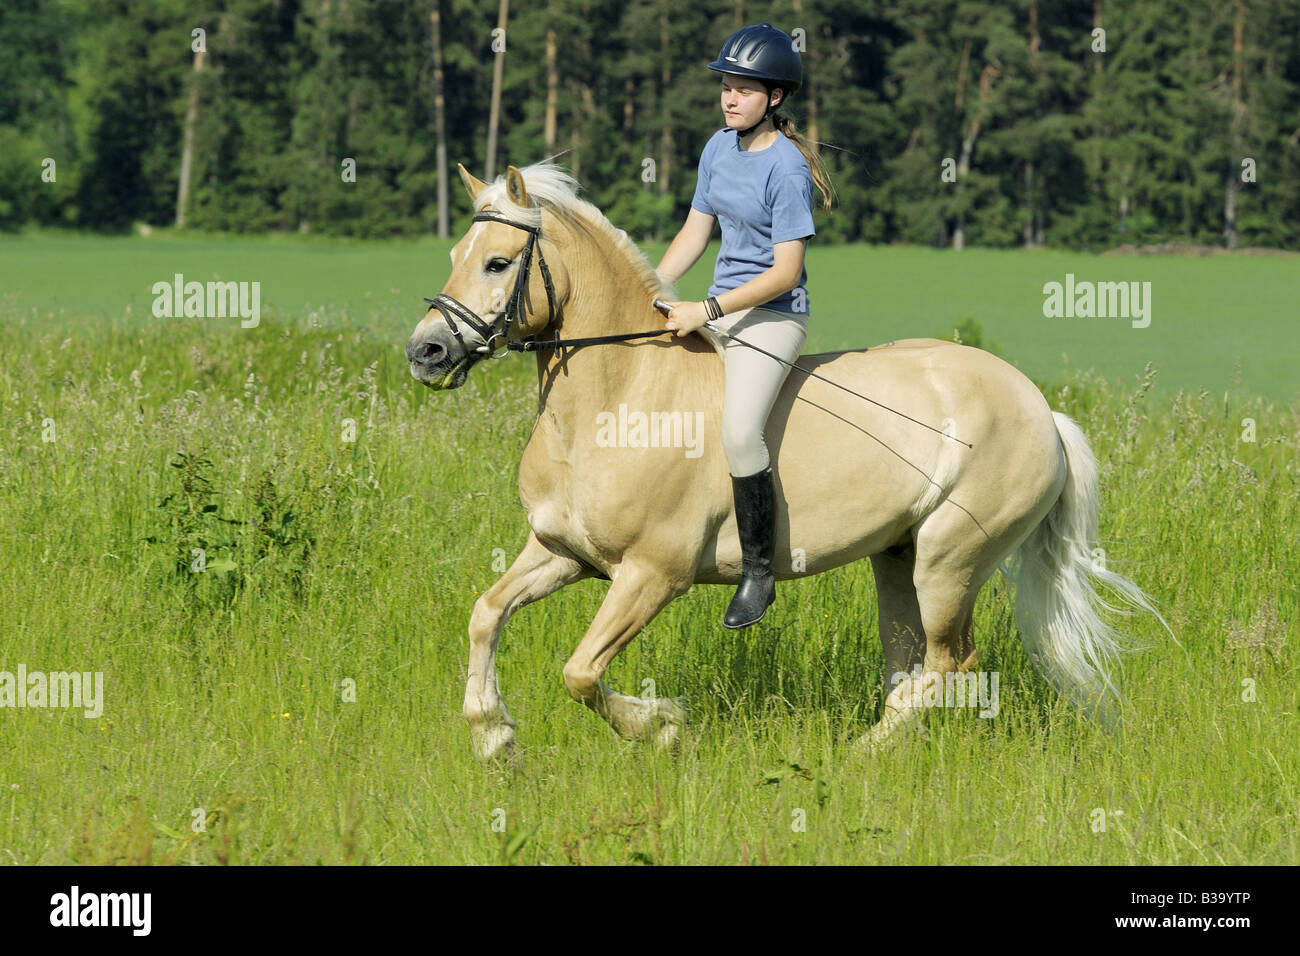 Girl galloping on Haflinger horse without saddle Stock Photo